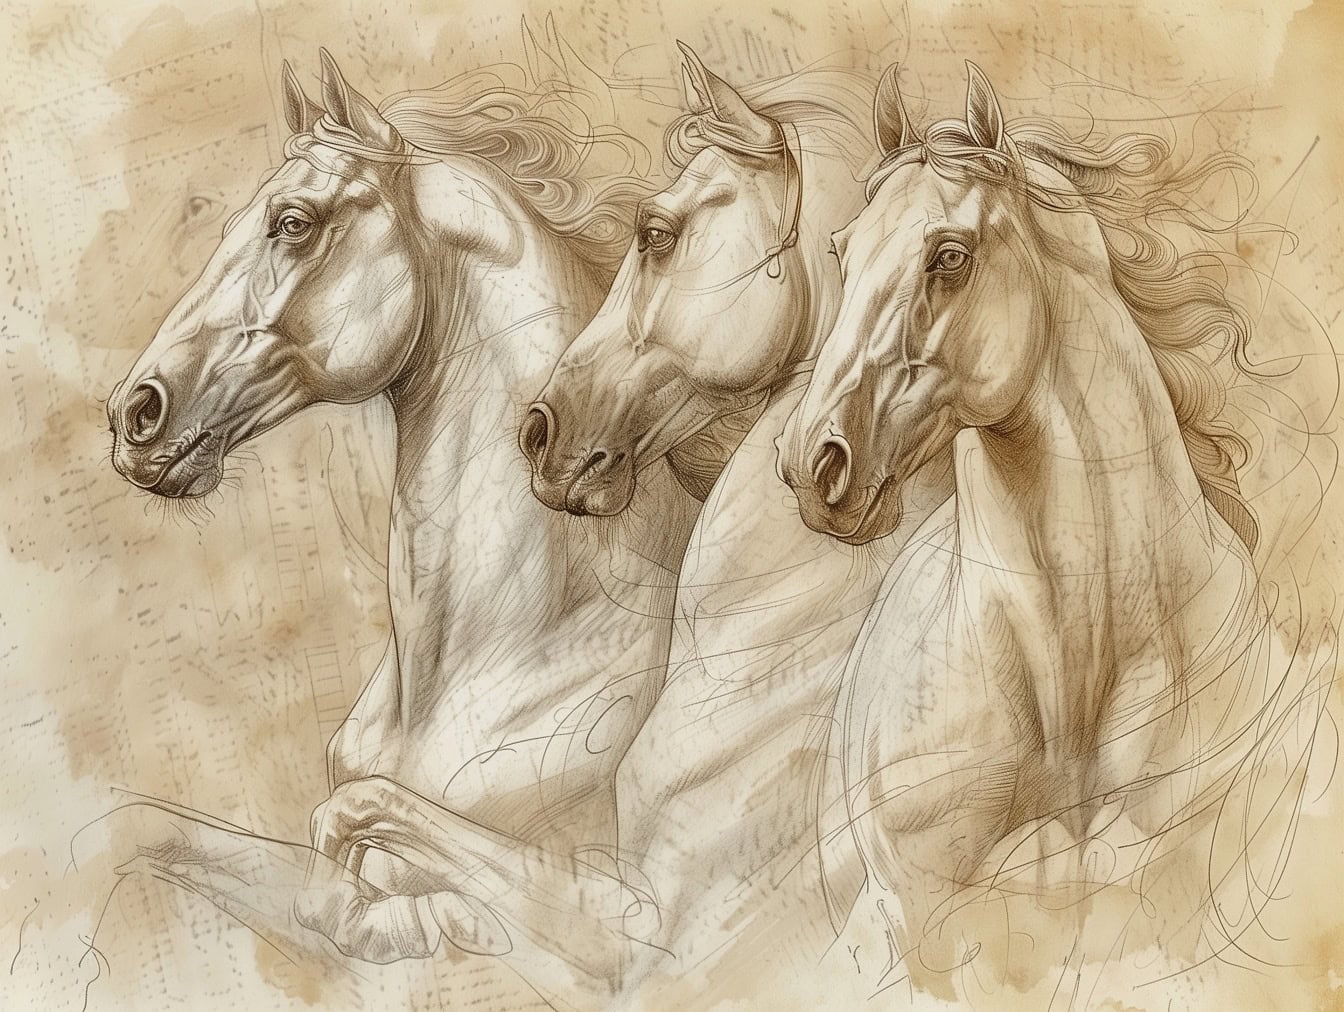 Ruční kresba koní na starém vybledlém poloprůhledném papíře ve stylu výtvarných děl středověkých umělců